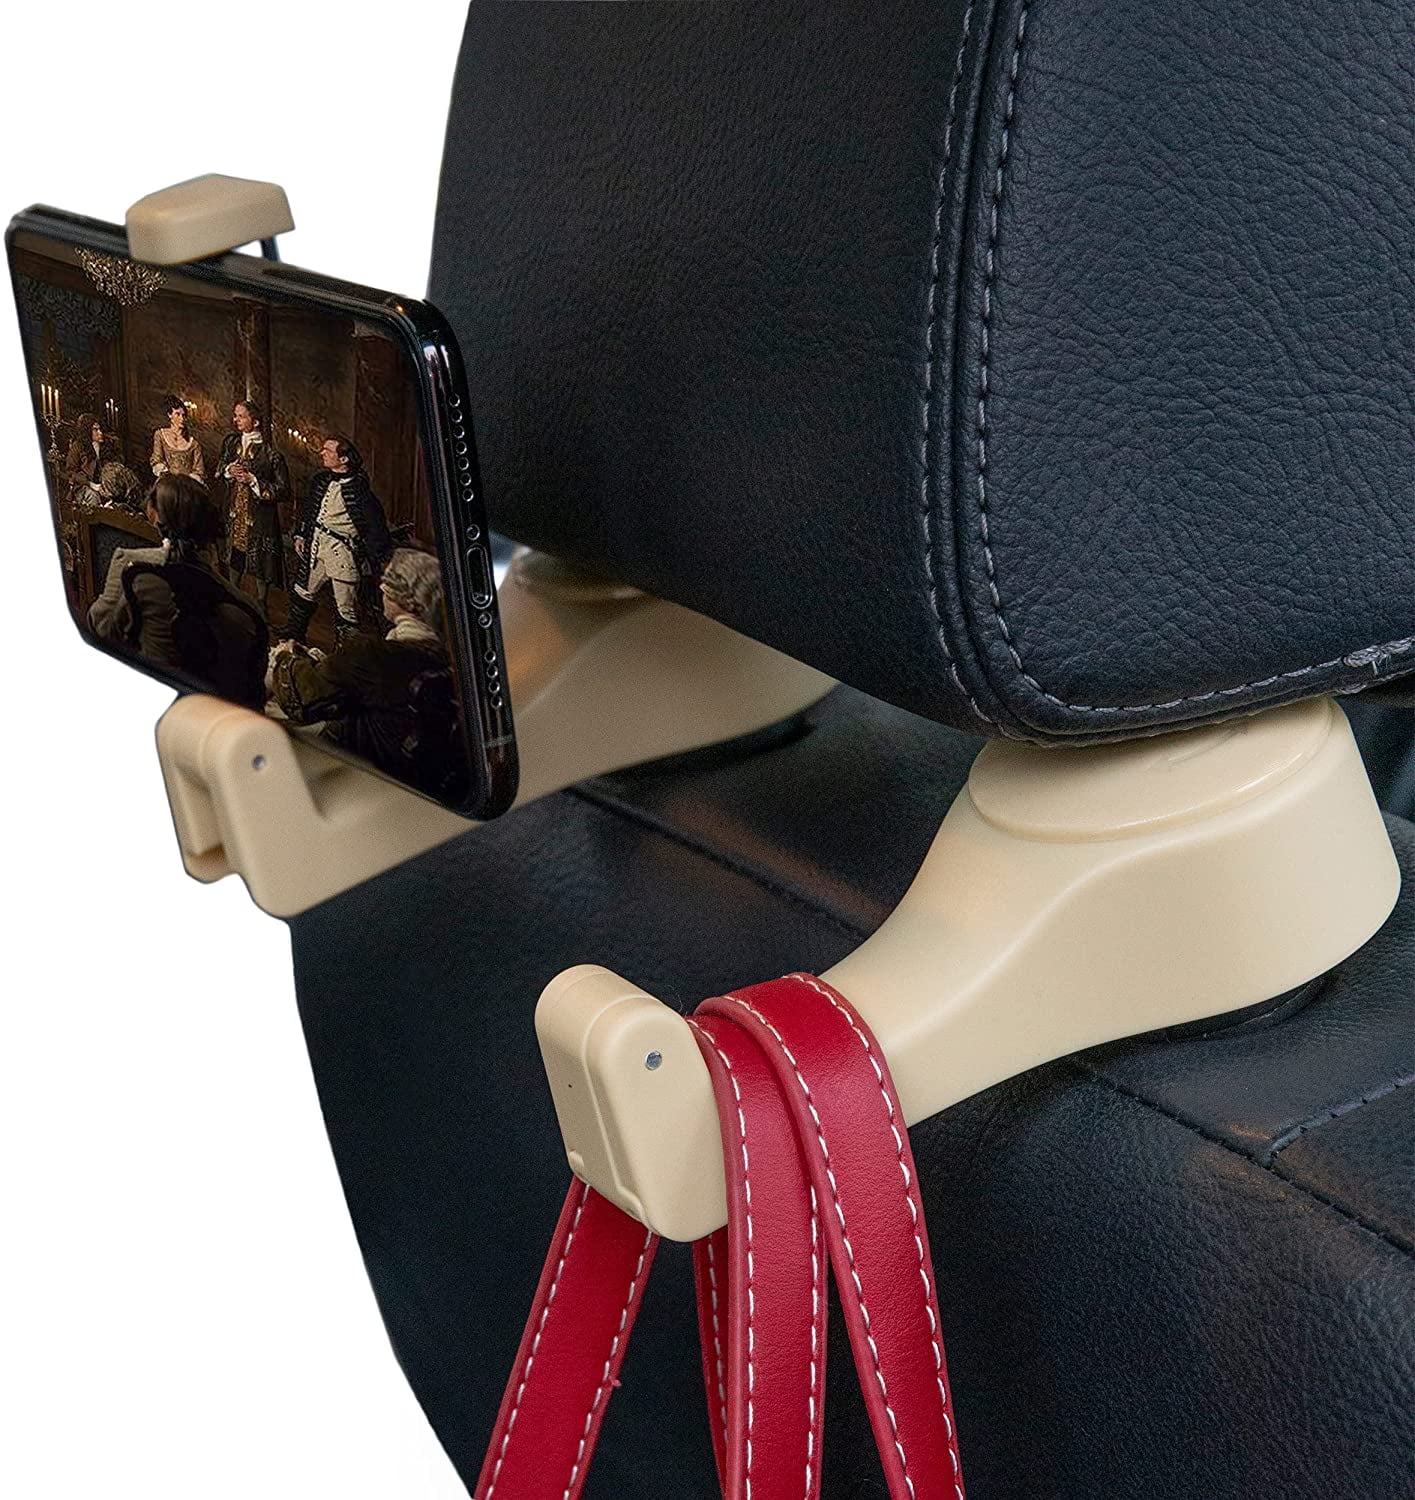 Car Seat Headrest Hooks for Car Universal Car Vehicle Back Seat Headrest Hanger Holder Hook for Bag Purse Cloth Grocery Beige-Set of 2